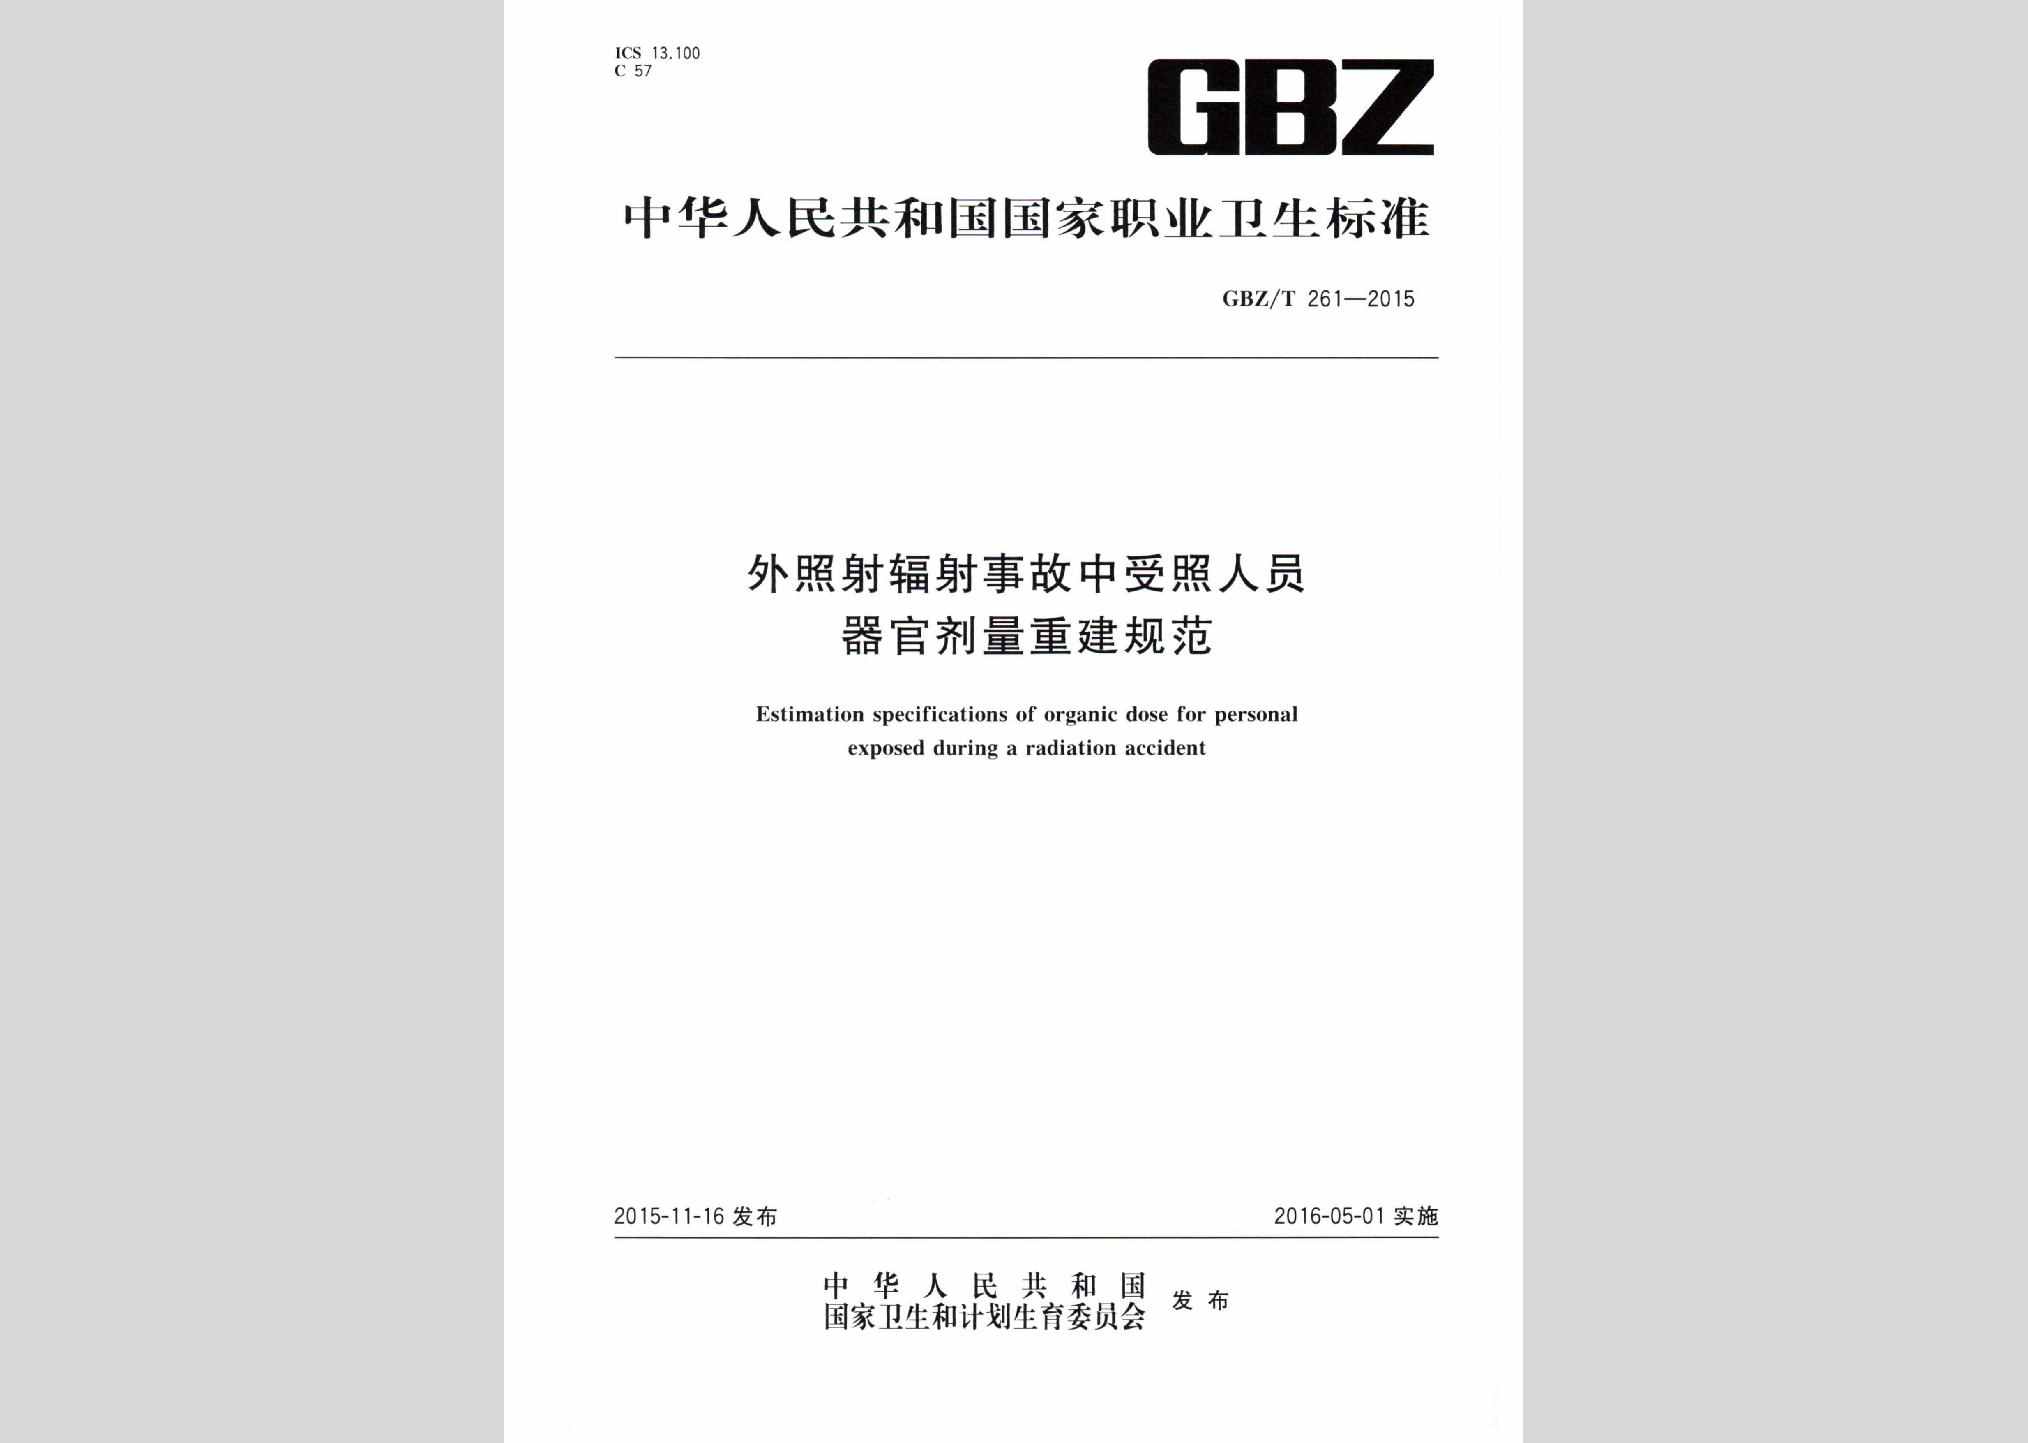 GBZ/T261-2015：外照射辐射事故中受照人员器官剂量重建规范